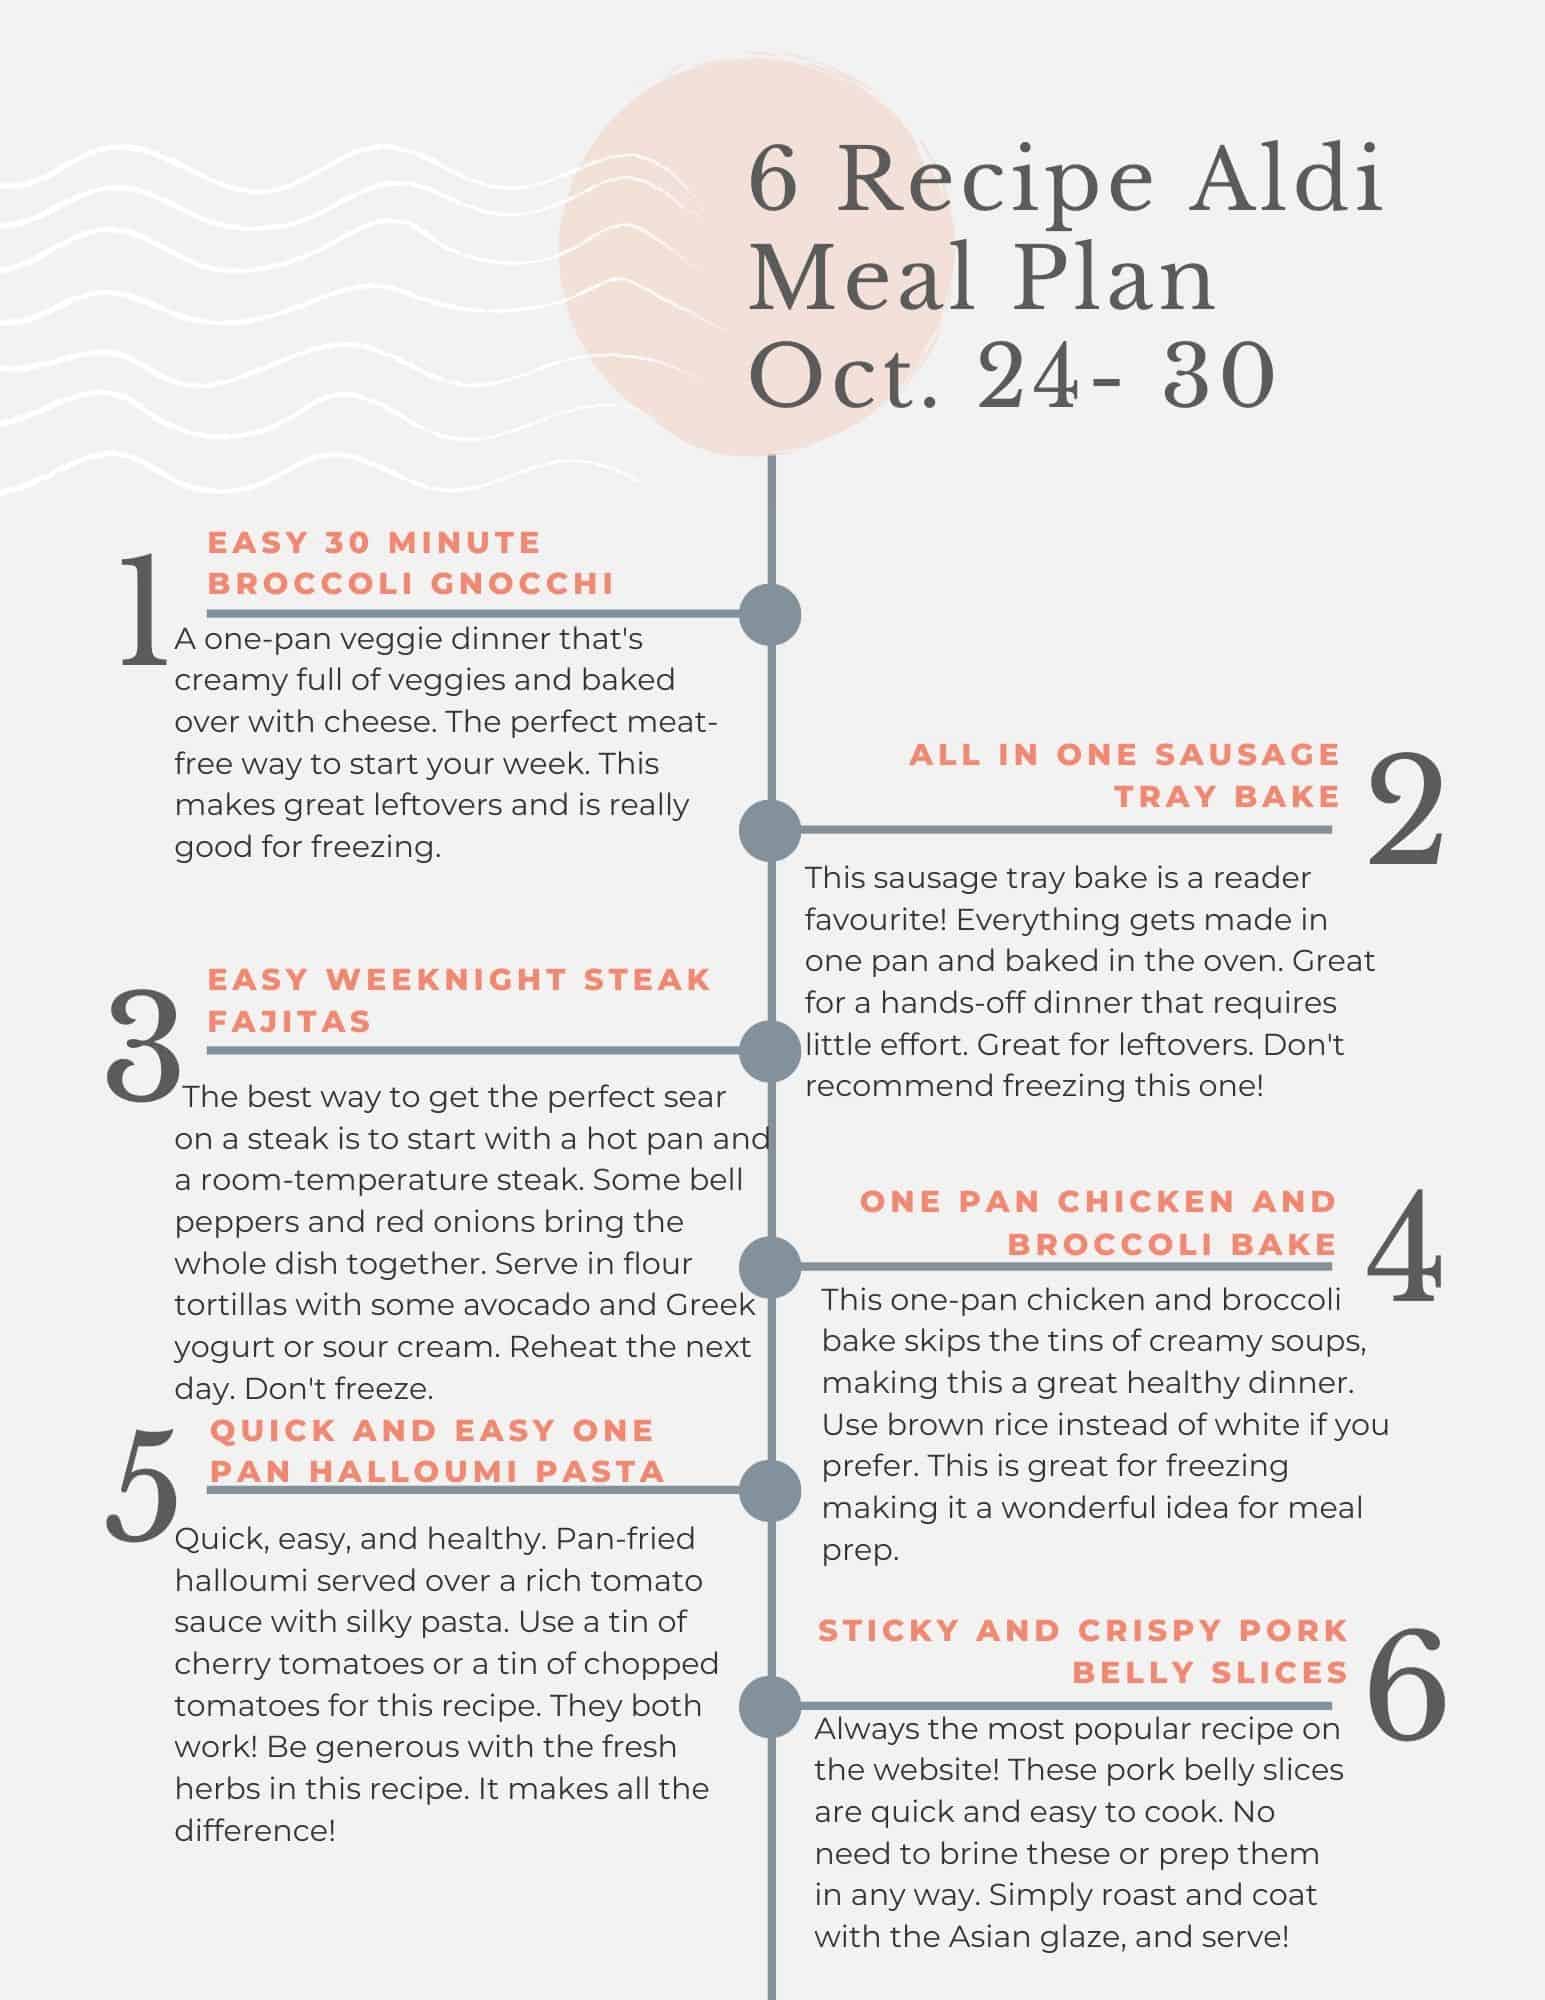 The weekly meal plan menu.